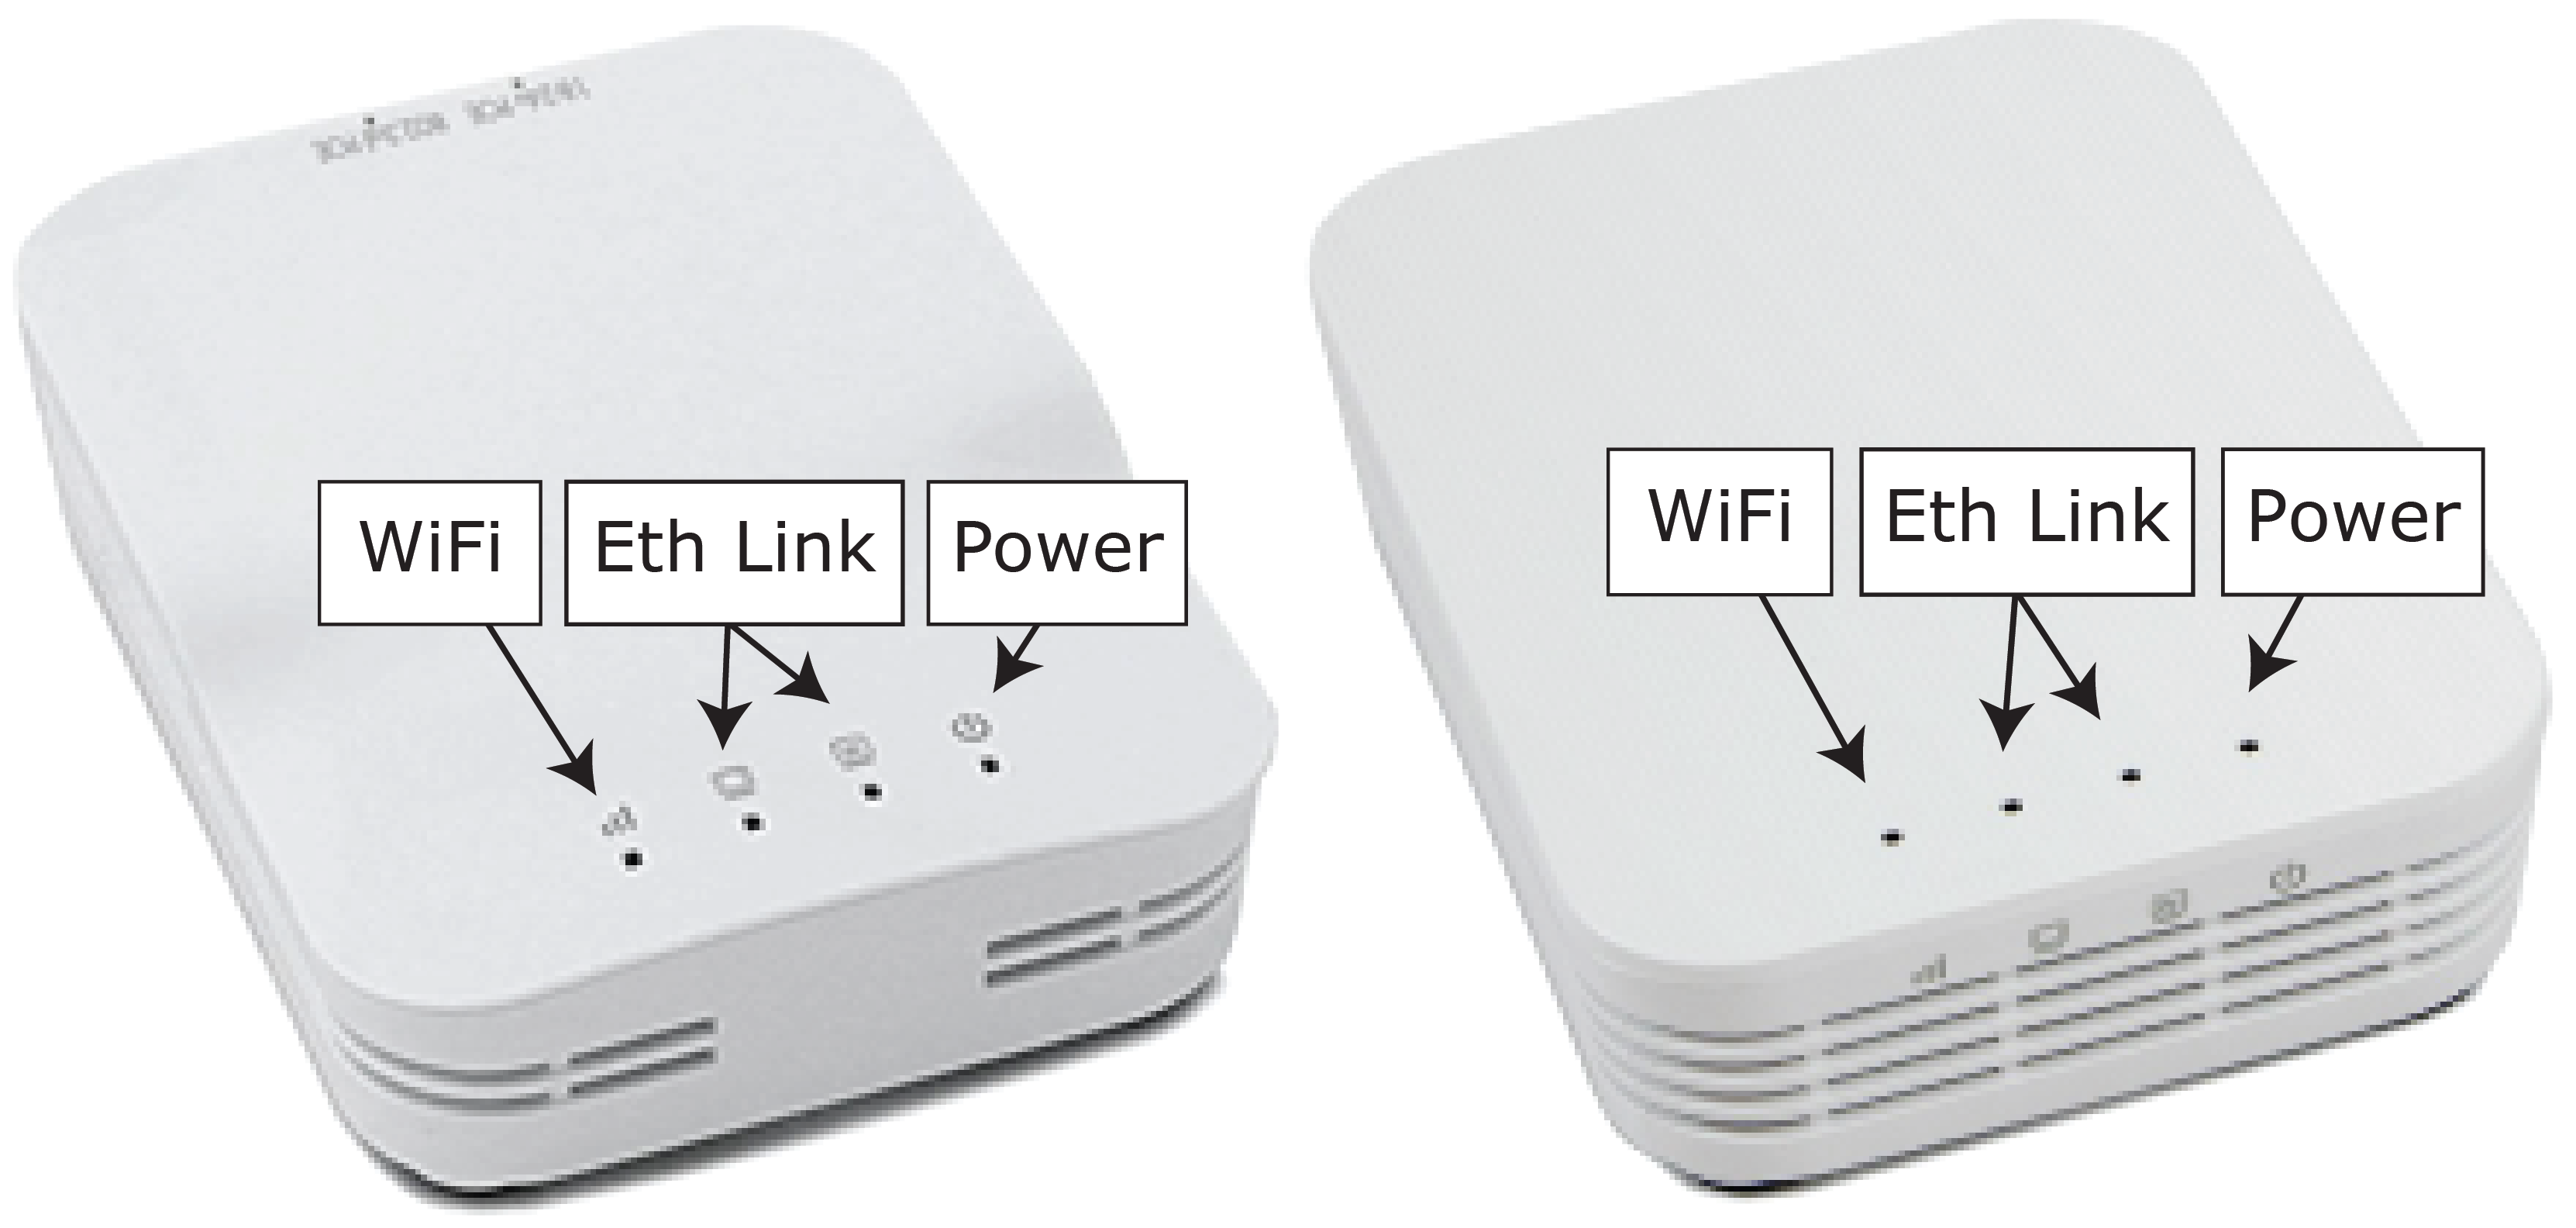 Radio avec les ports Wifi, Eth Link (2) et alimentation étiquetés.